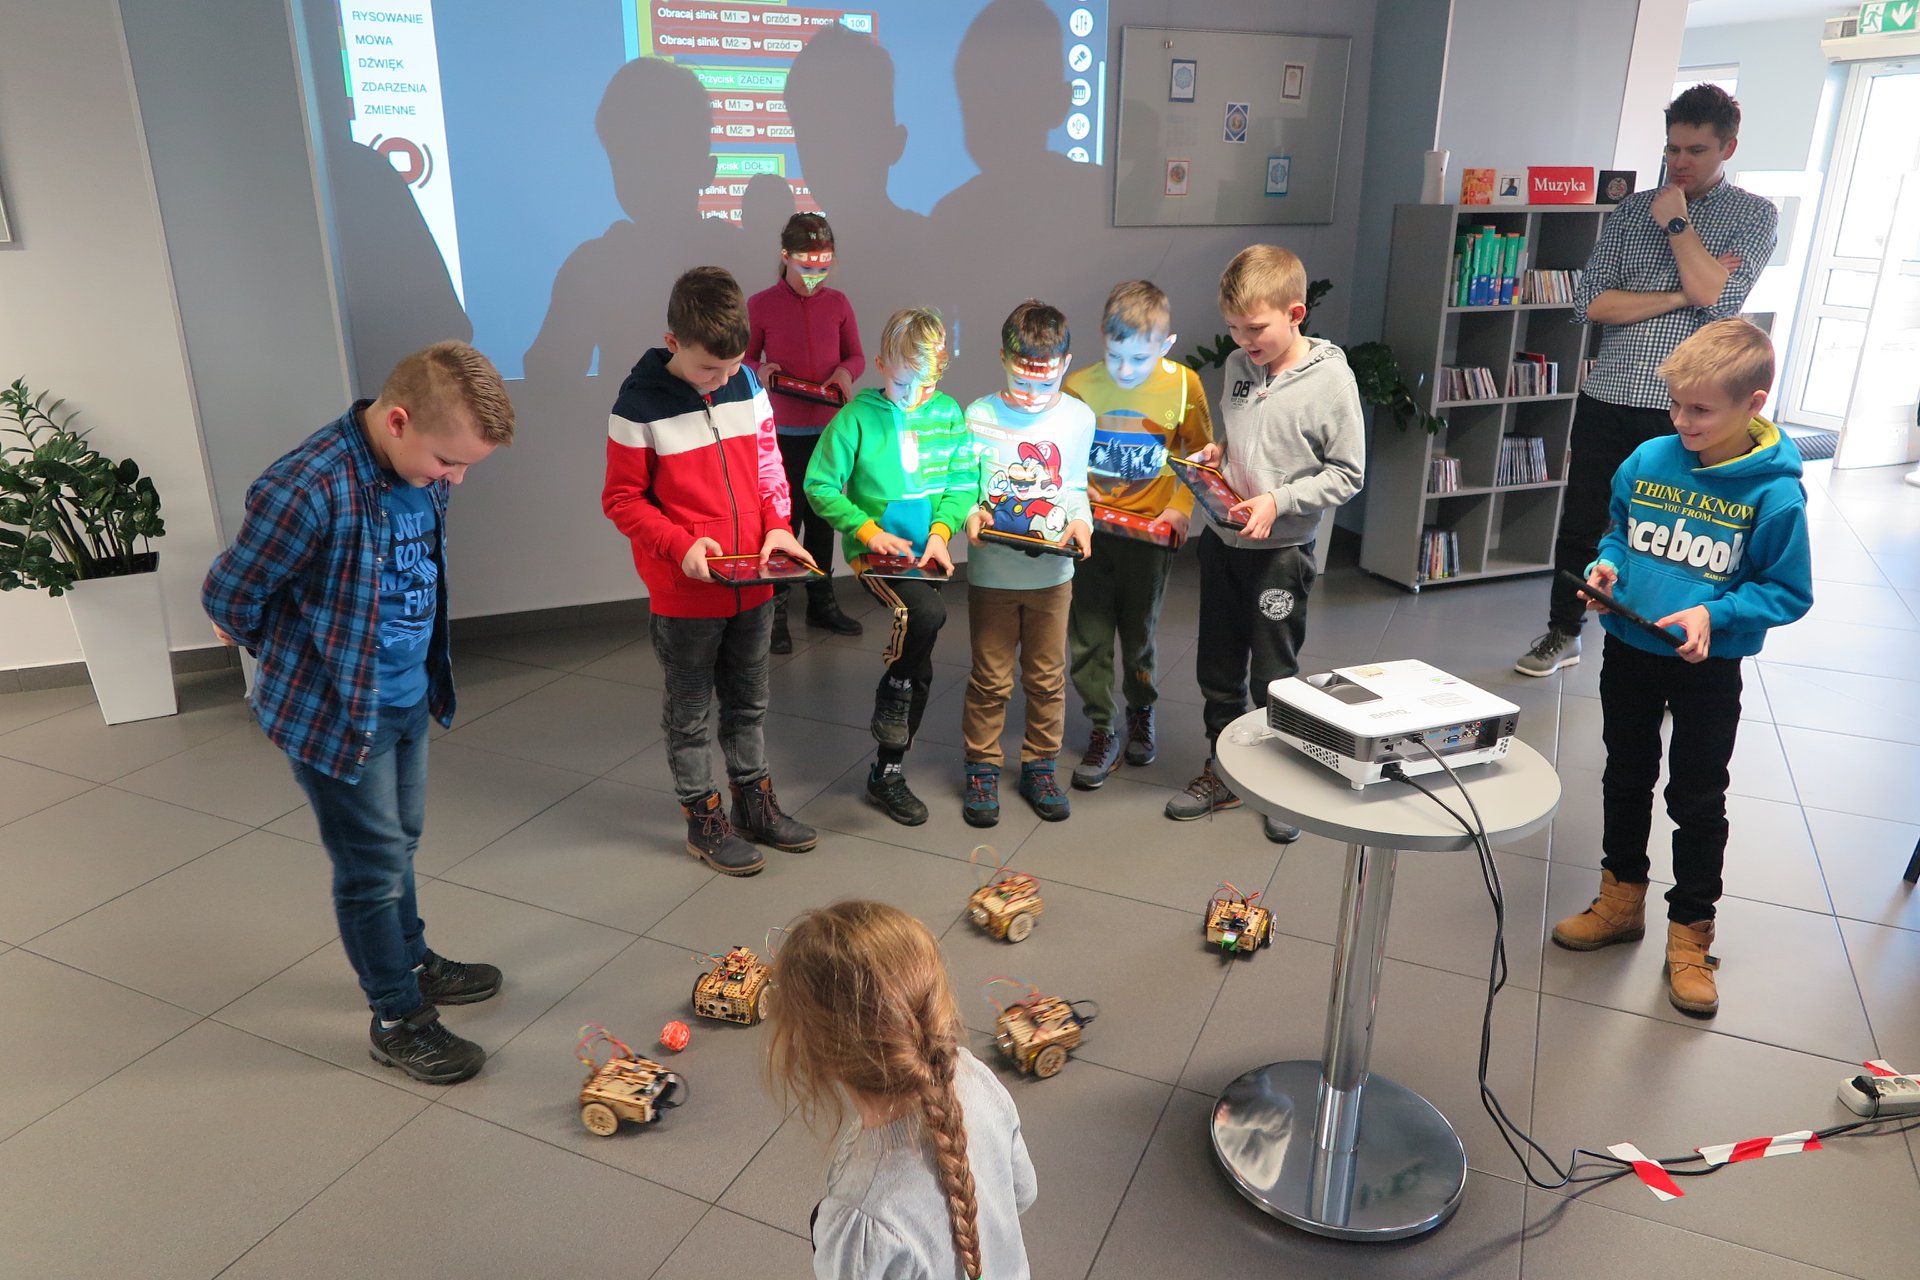 Wnętrze biblioteki (mediateka) zajęcia z robotami prowadzi pan Paweł obok dzieci biorą udział w szkoleniu na podłodze jeżdżące roboty LOFI